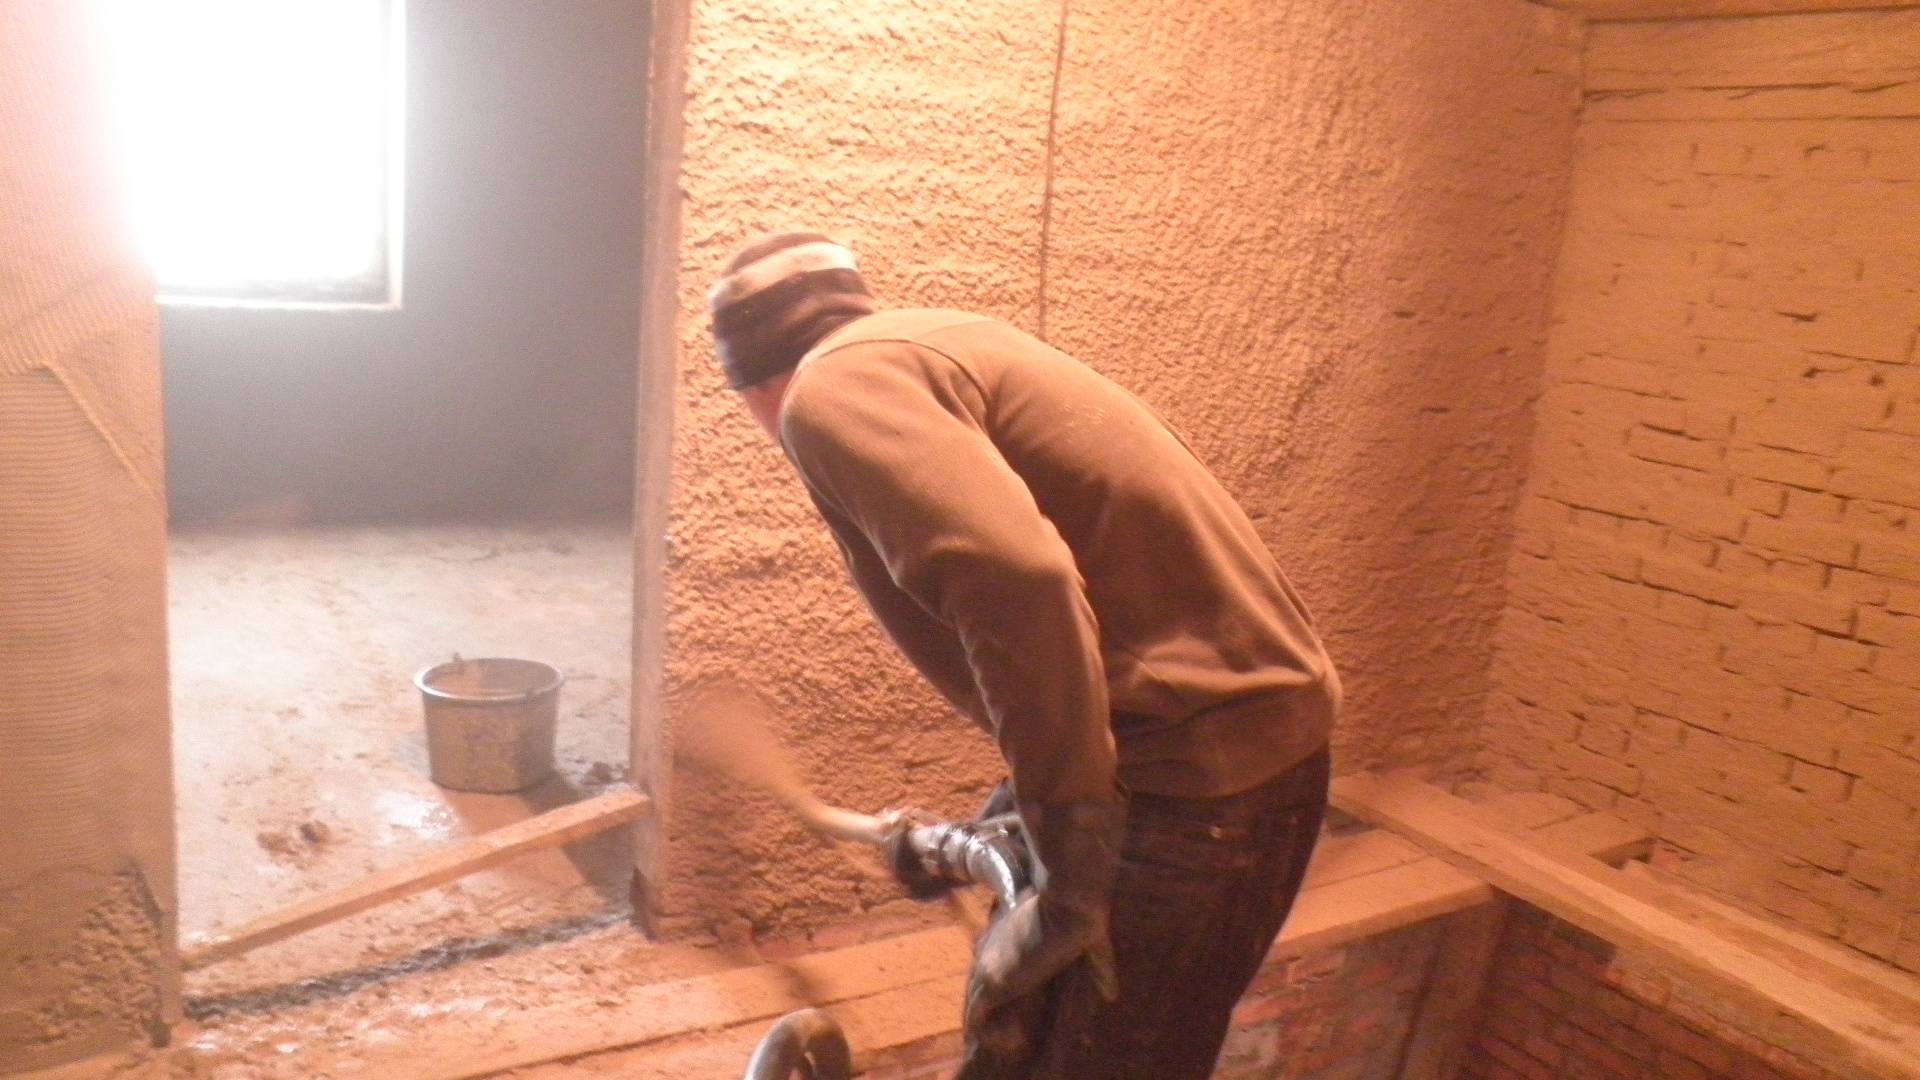 Оштукатуривание стен домов глиной: как сделать глиняный раствор, состав, пропорции.